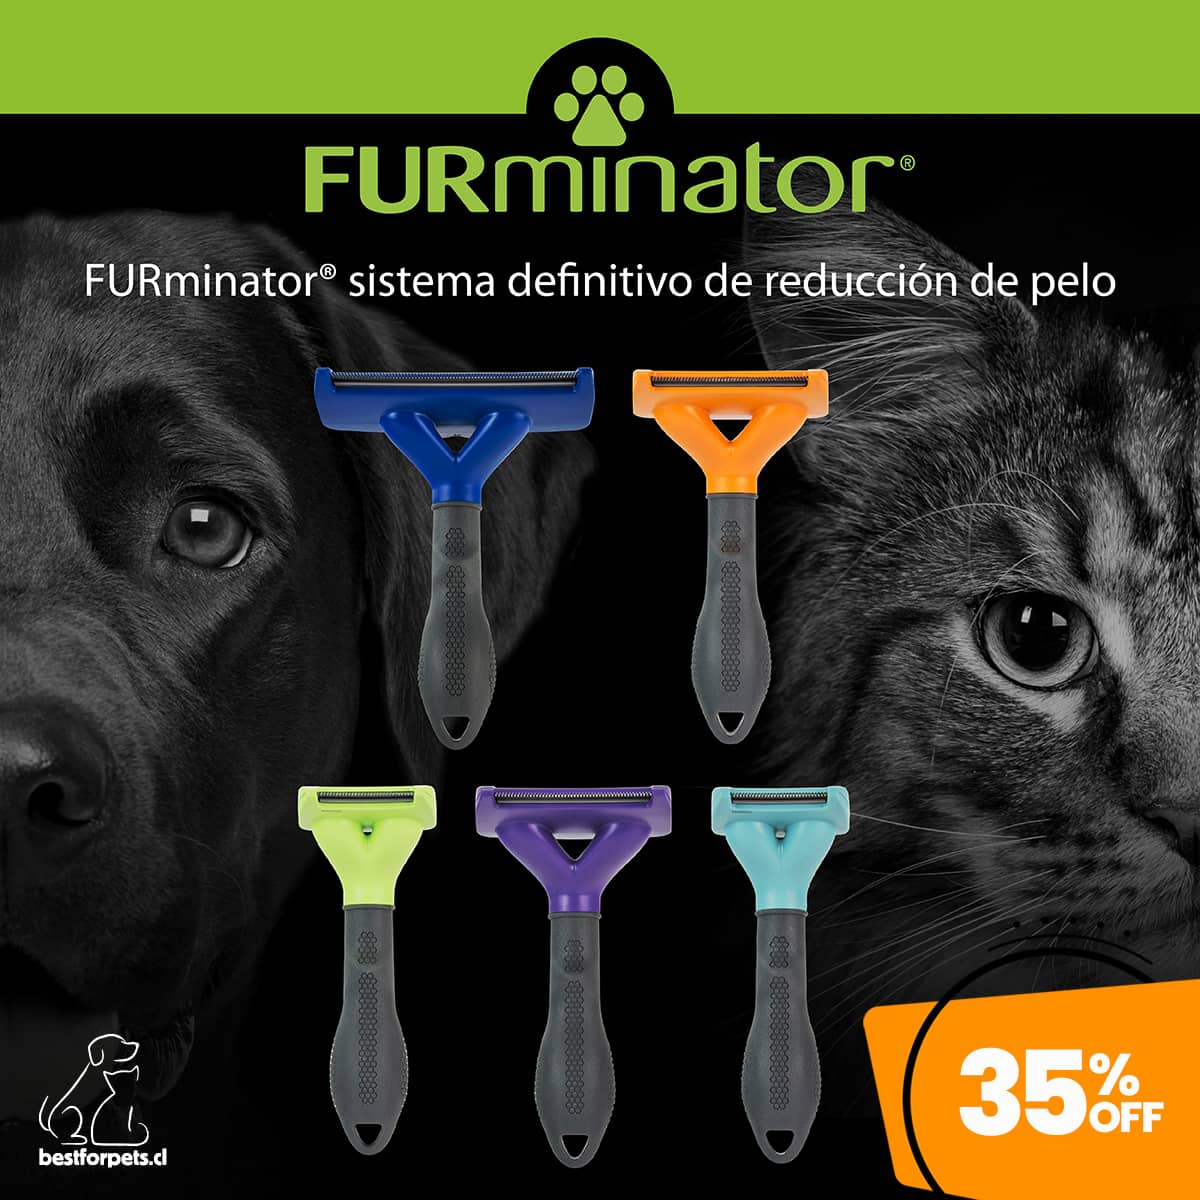 35% de descuento en cepillos FURminator para mascotas | Best for Pets